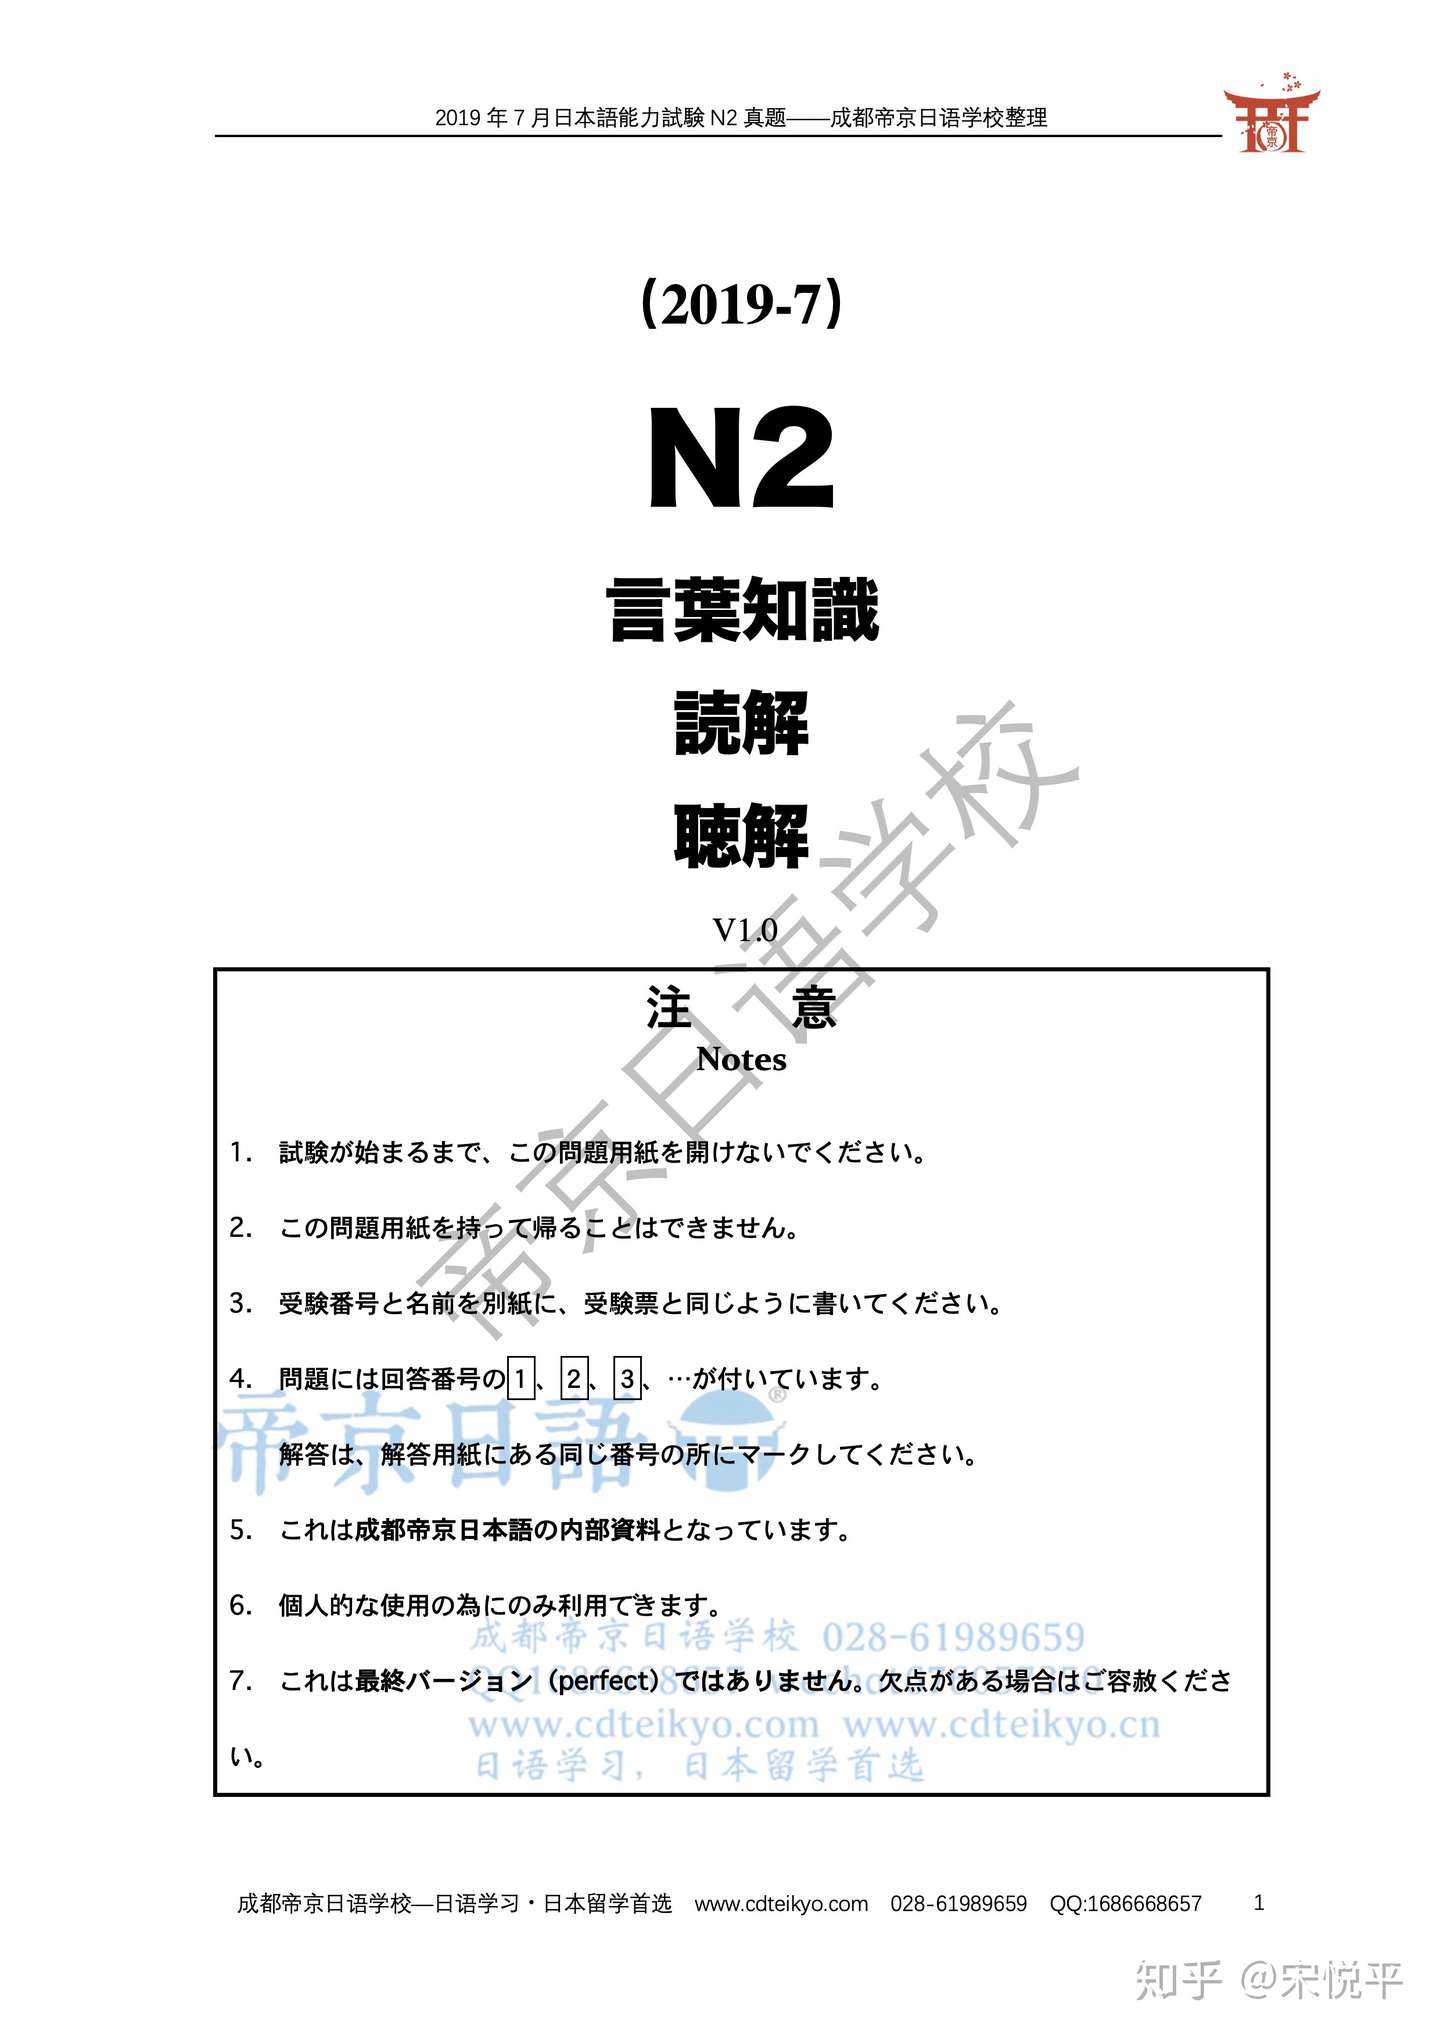 帝京日语首发 19年7月能力考n2真题免费下载 知乎